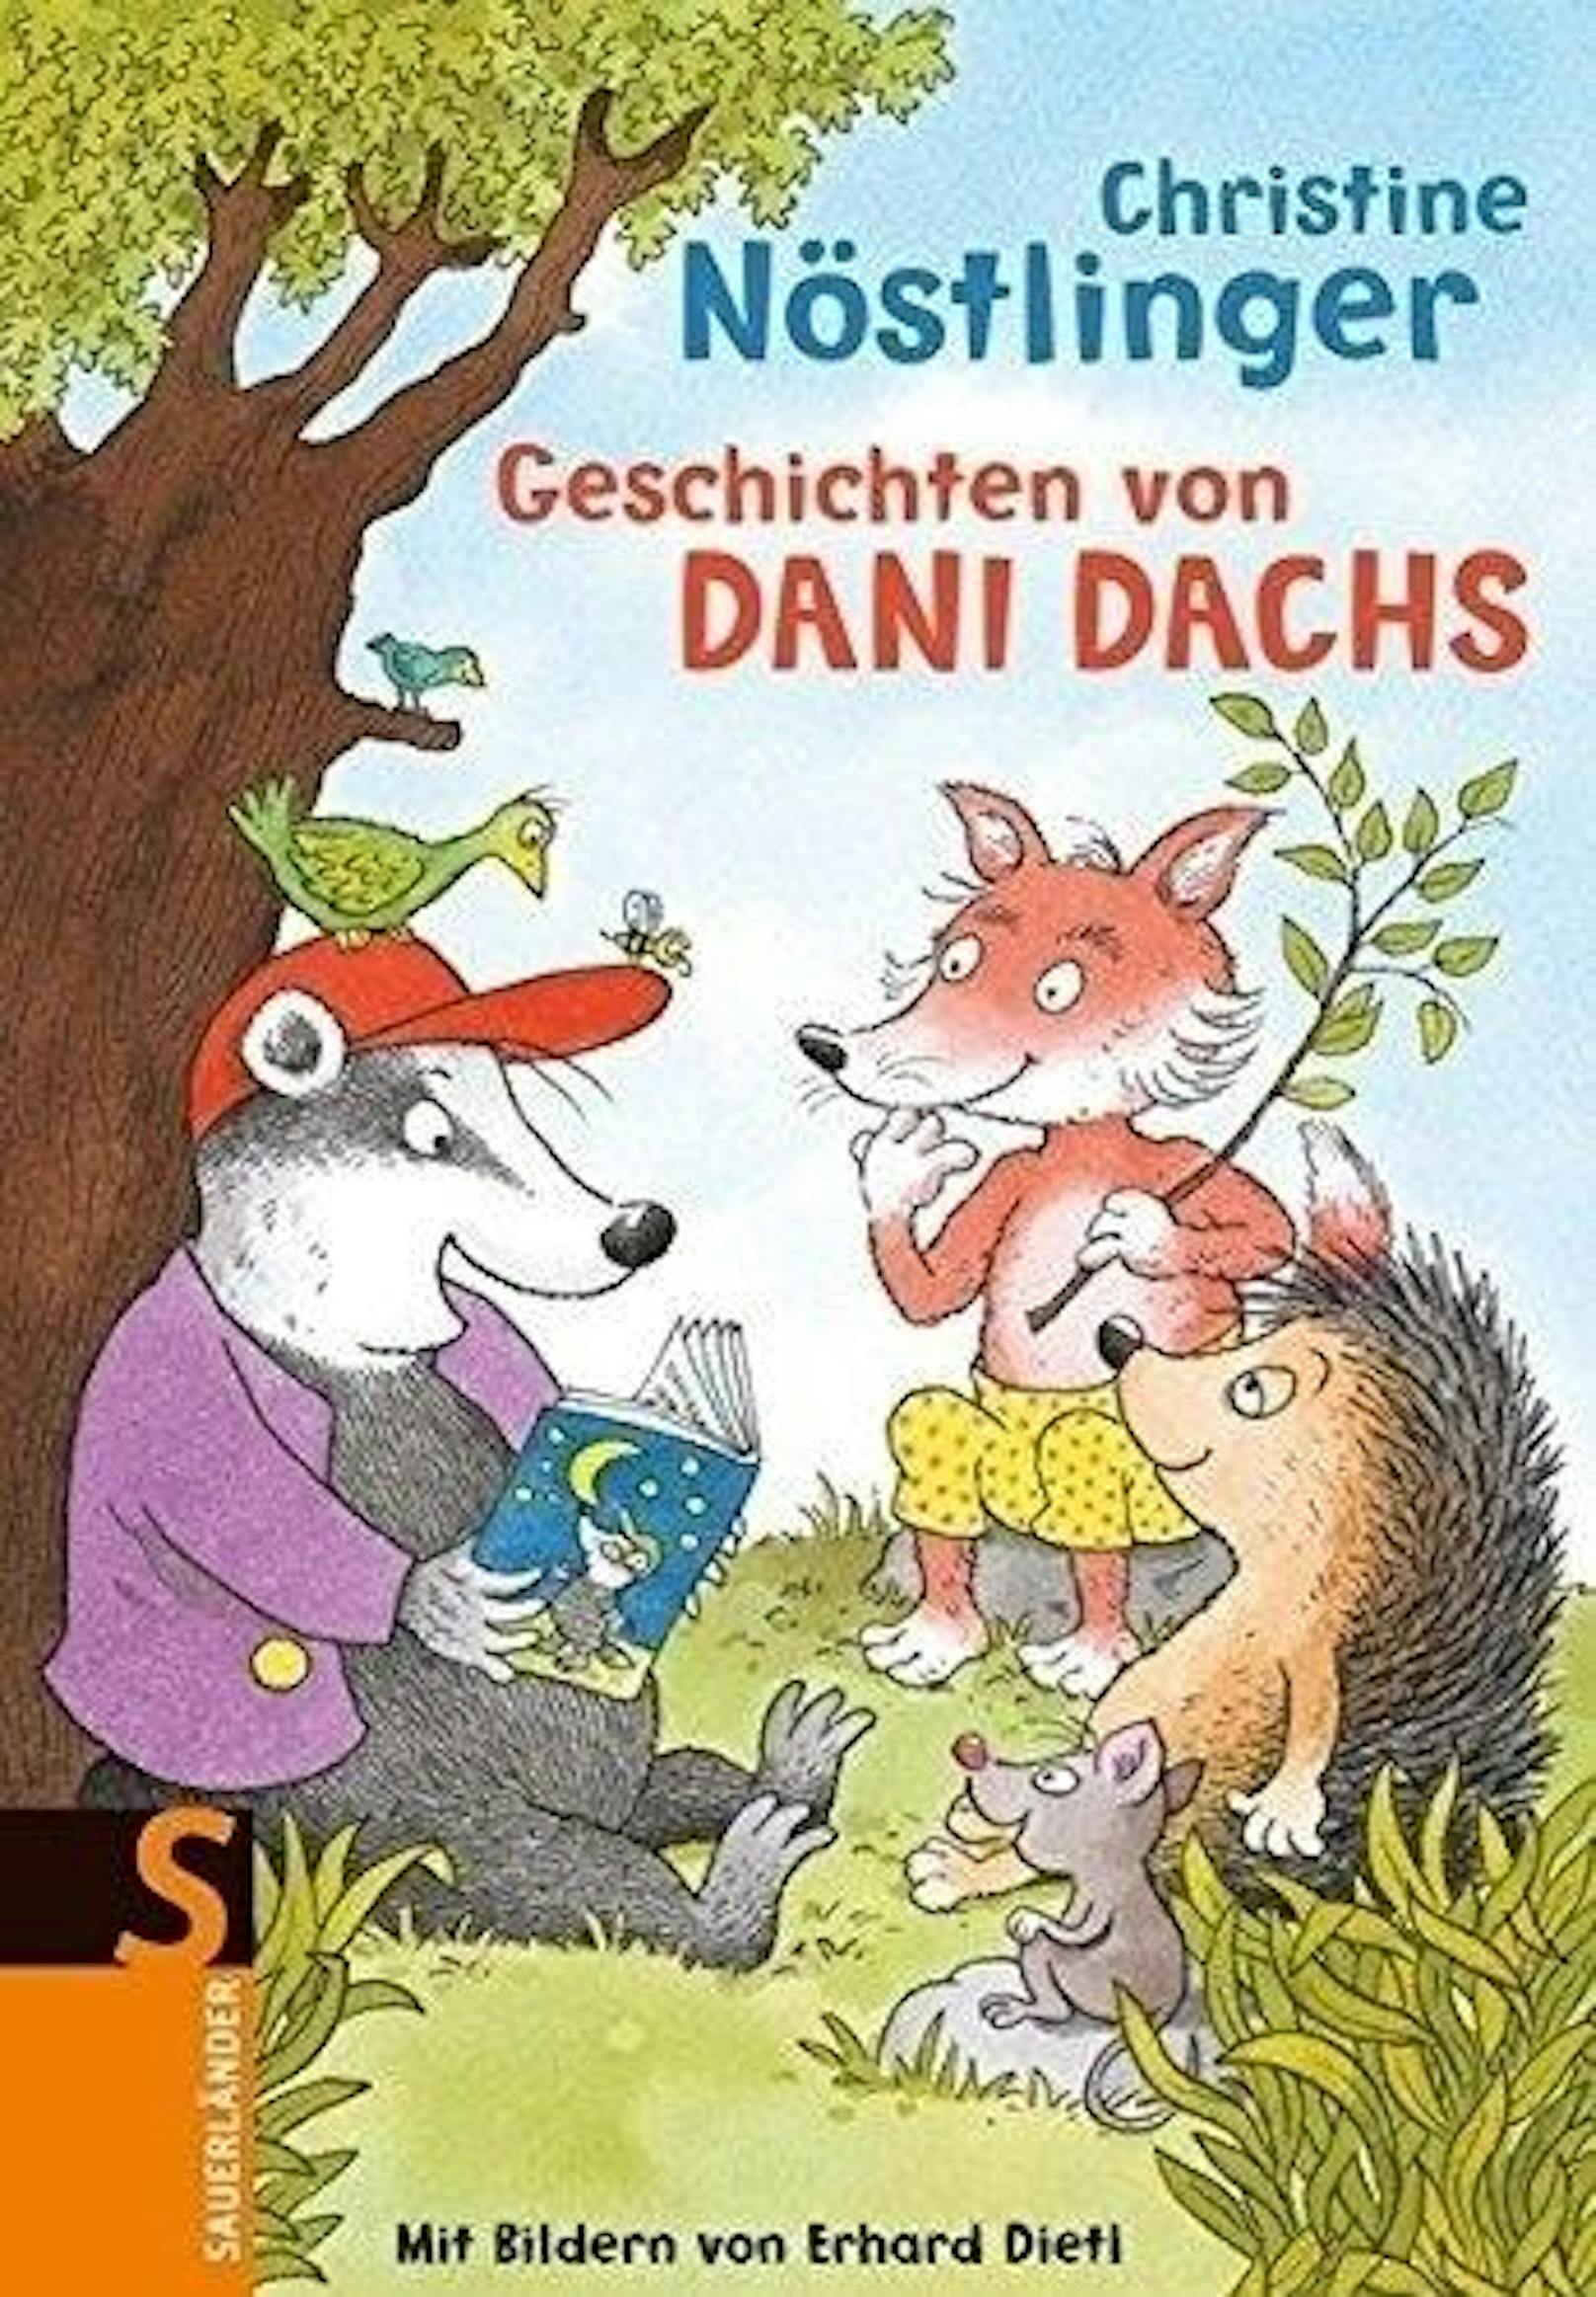 Dani Dachs-Serie, ab 2001